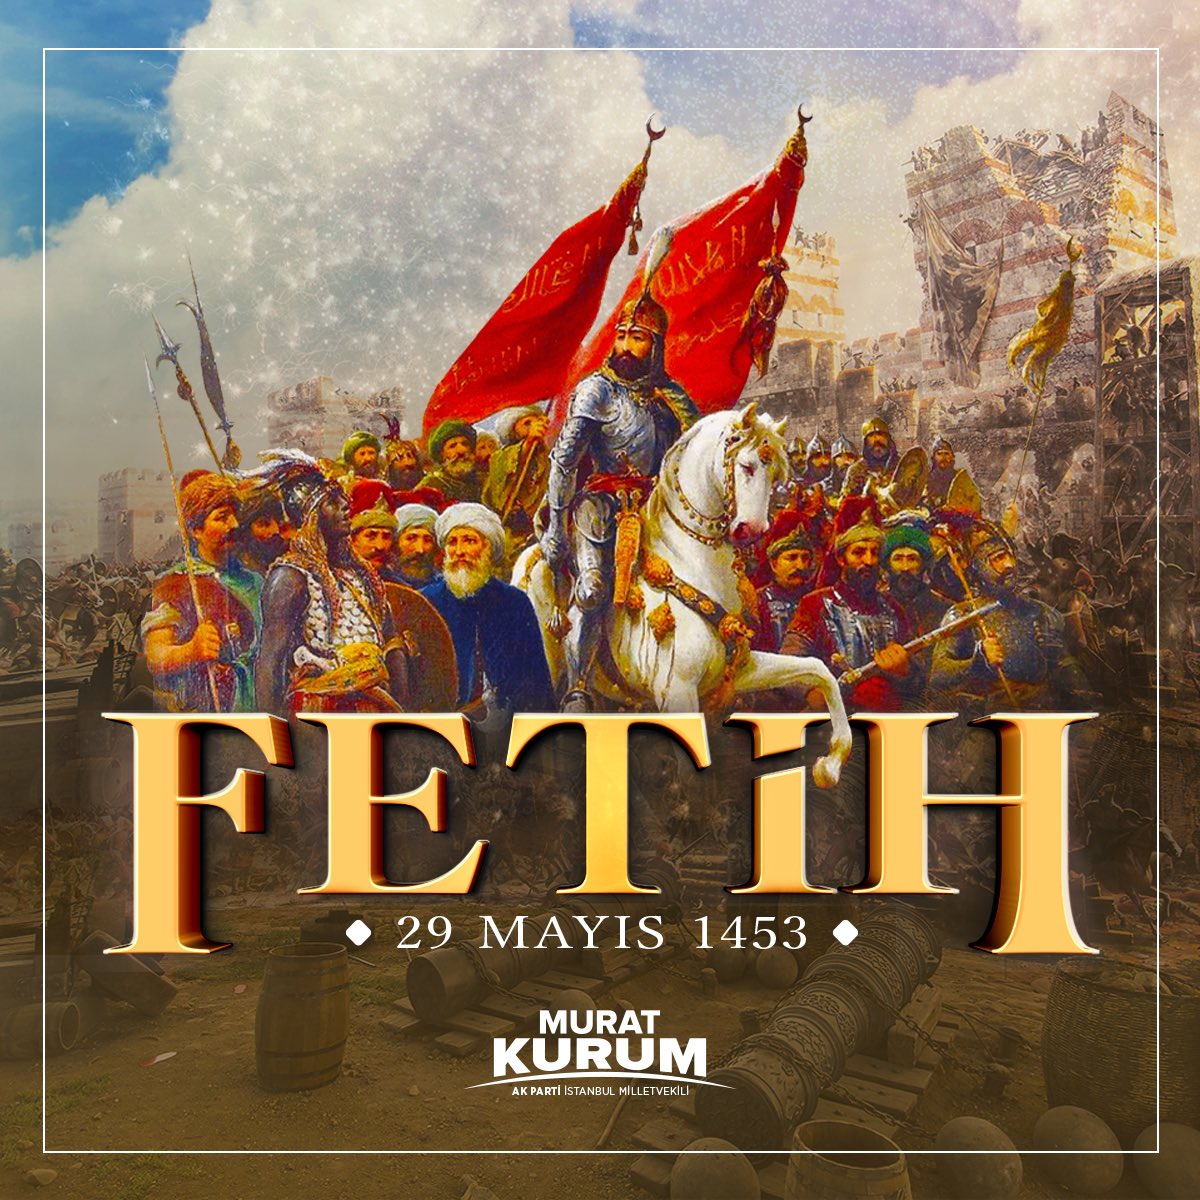 Kutlu Peygamberimizin övgüsüne mazhar olan Fatih Sultan Mehmet Han’ı ve muzaffer ordusunu rahmetle ve minnetle yad ediyorum. Rabbim mekanlarını cennet eylesin. 

İstanbul'un Fethi’nin 571. yıl dönümü kutlu olsun.

#Fetih1453
#İstanbulunFethi